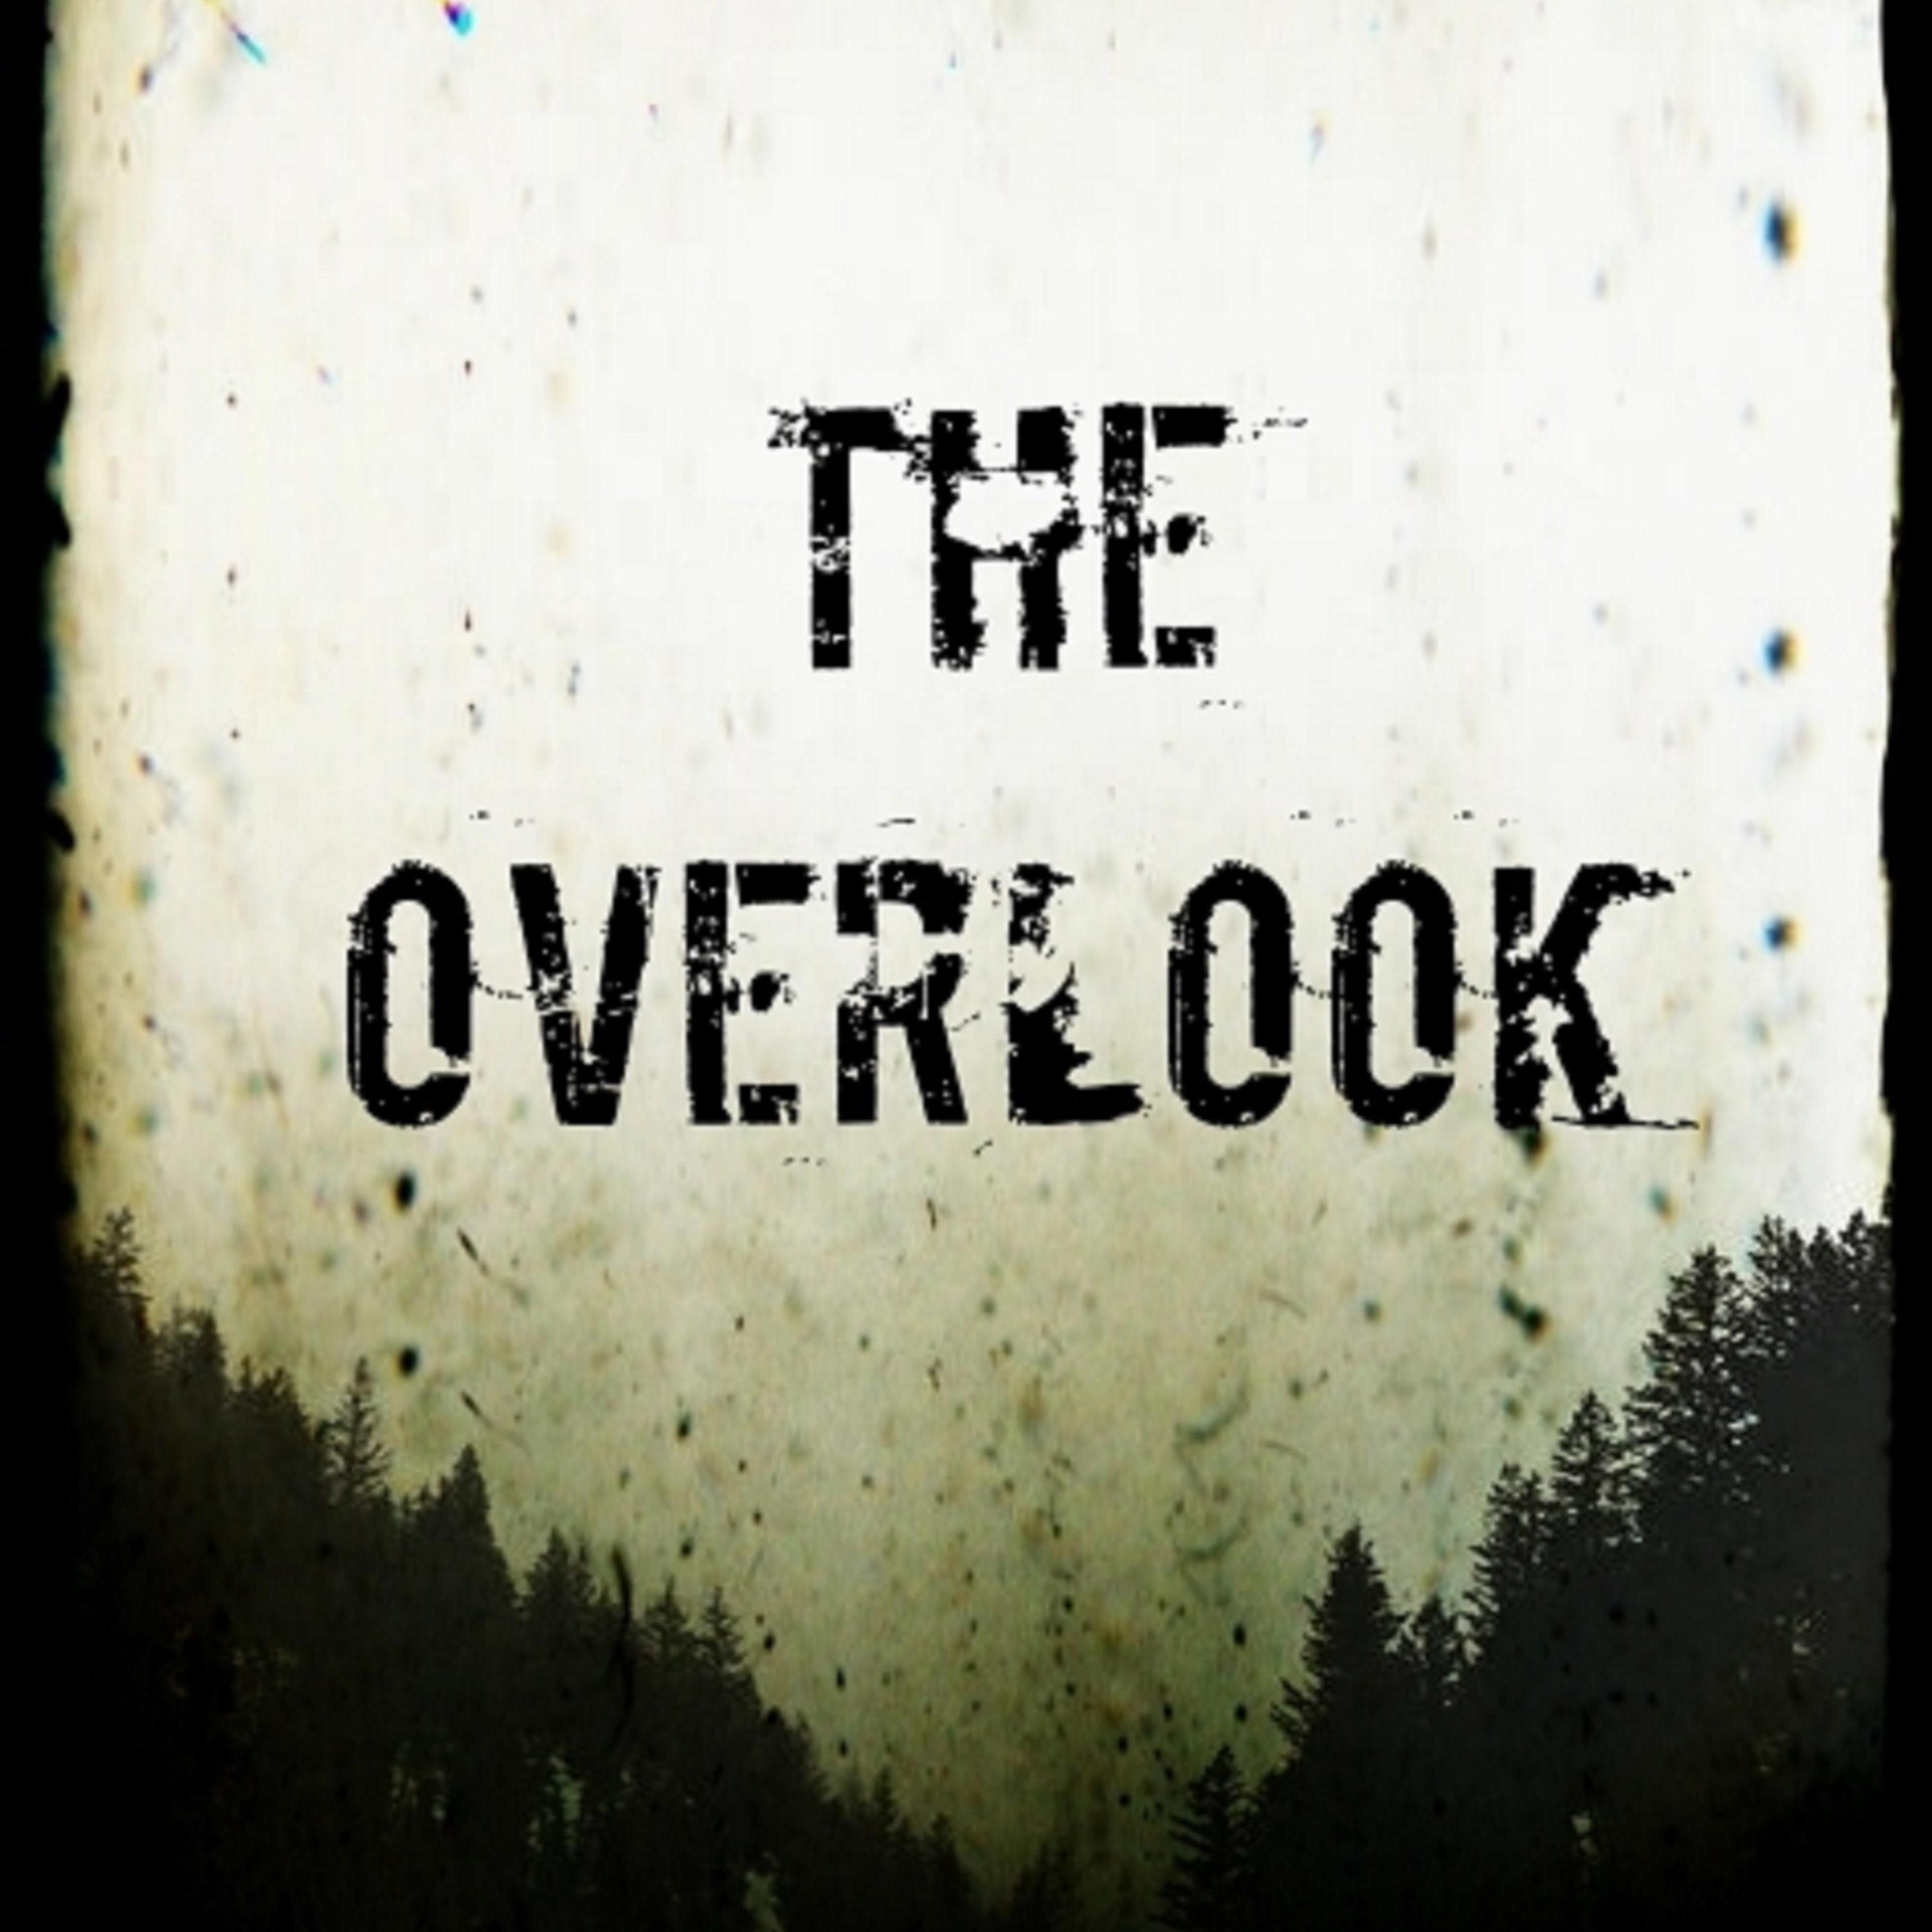 The Overlook